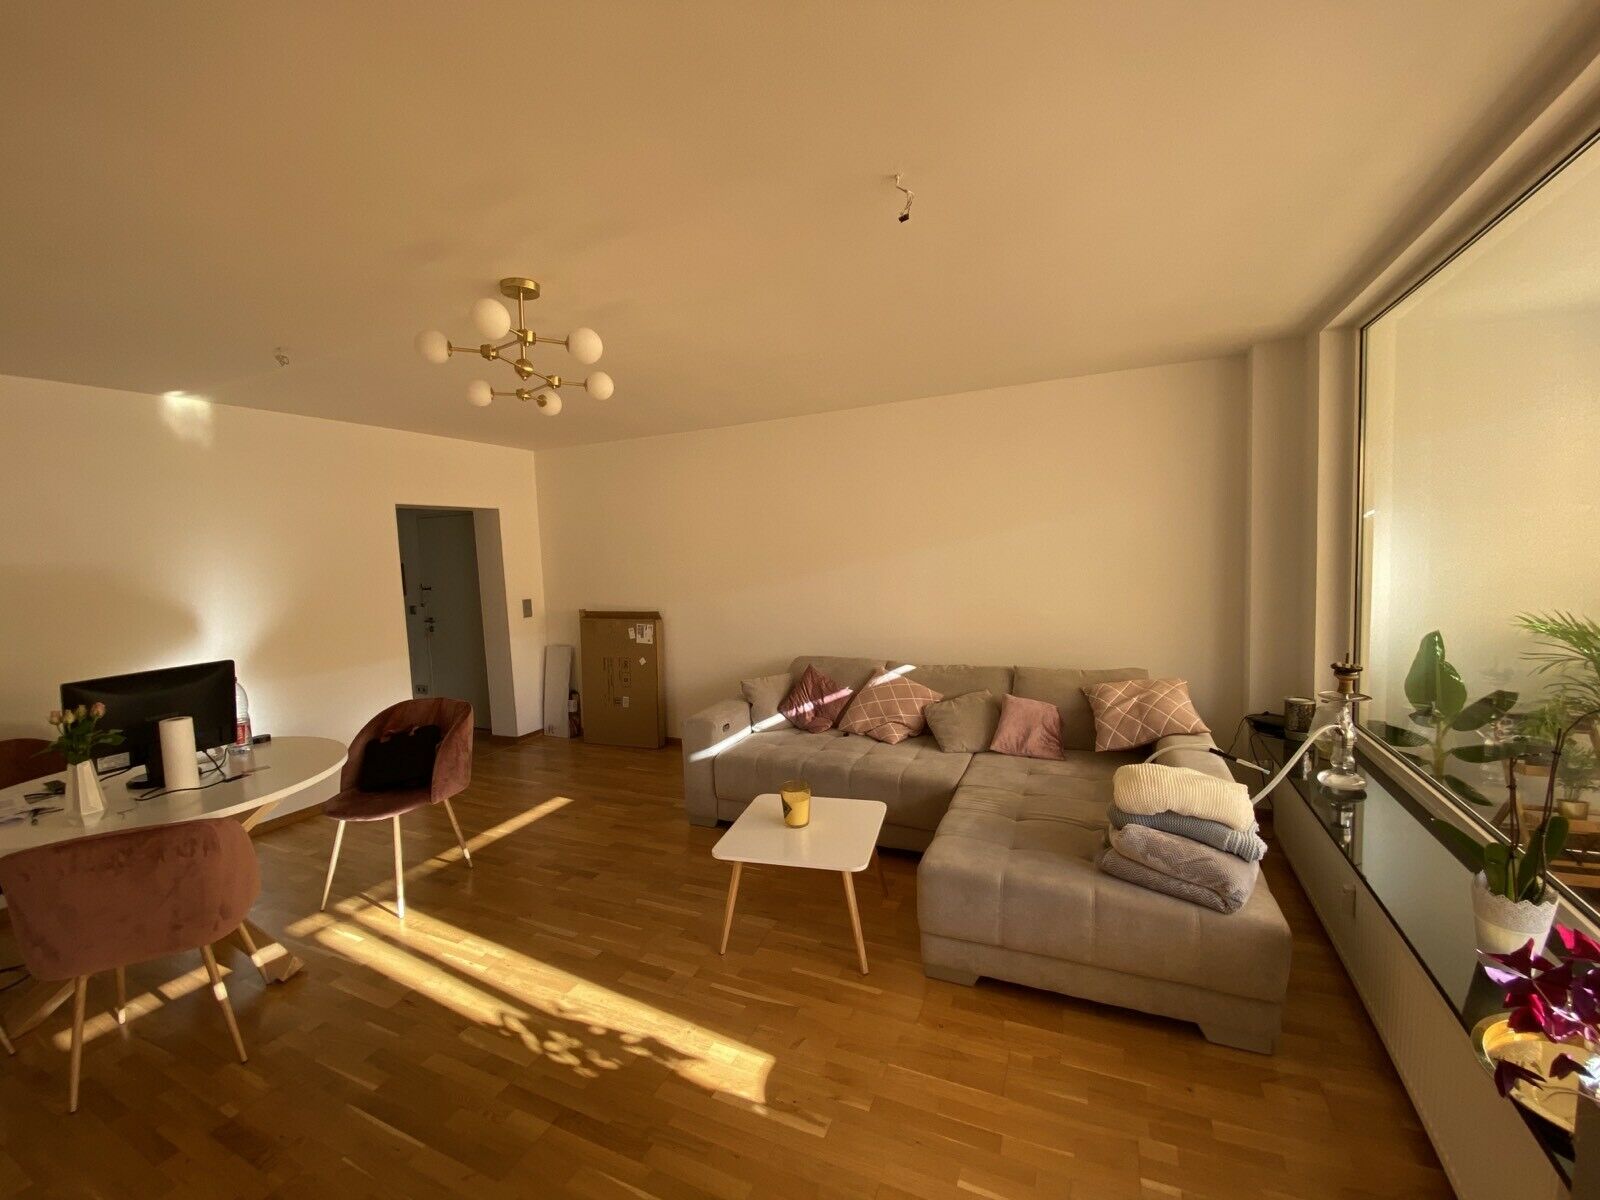 2 Zimmer Wohnung Zu Vermieten 60488 Frankfurt Main Hausen I Frankfurt A Main Mapio Net